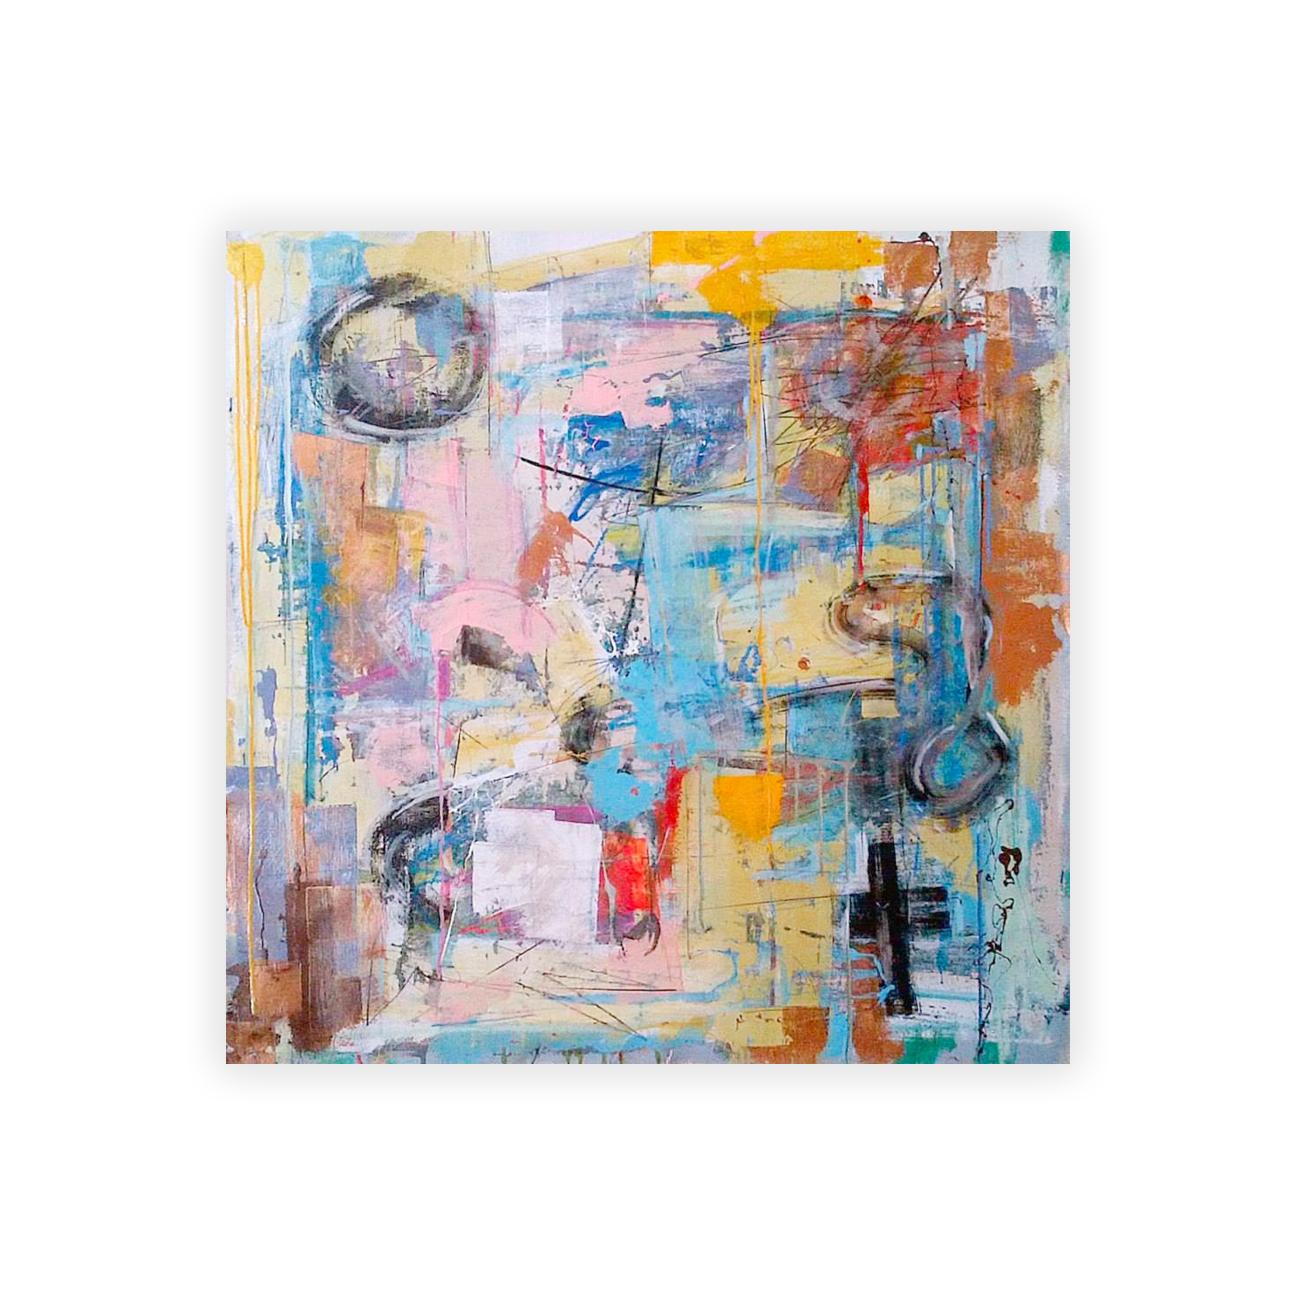 Tagelöhner von Joseph Conrad-Ferm, 2014
Mix Medium auf Leinwand
32" X 32" X 1,25"
81,28cm x 81,28cm x 3,175cm

Abstraktes Gemälde in Mischtechnik auf Leinwand des in New York lebenden Künstlers Joseph Conrad-Ferm.

Der Versand ist nicht inbegriffen.